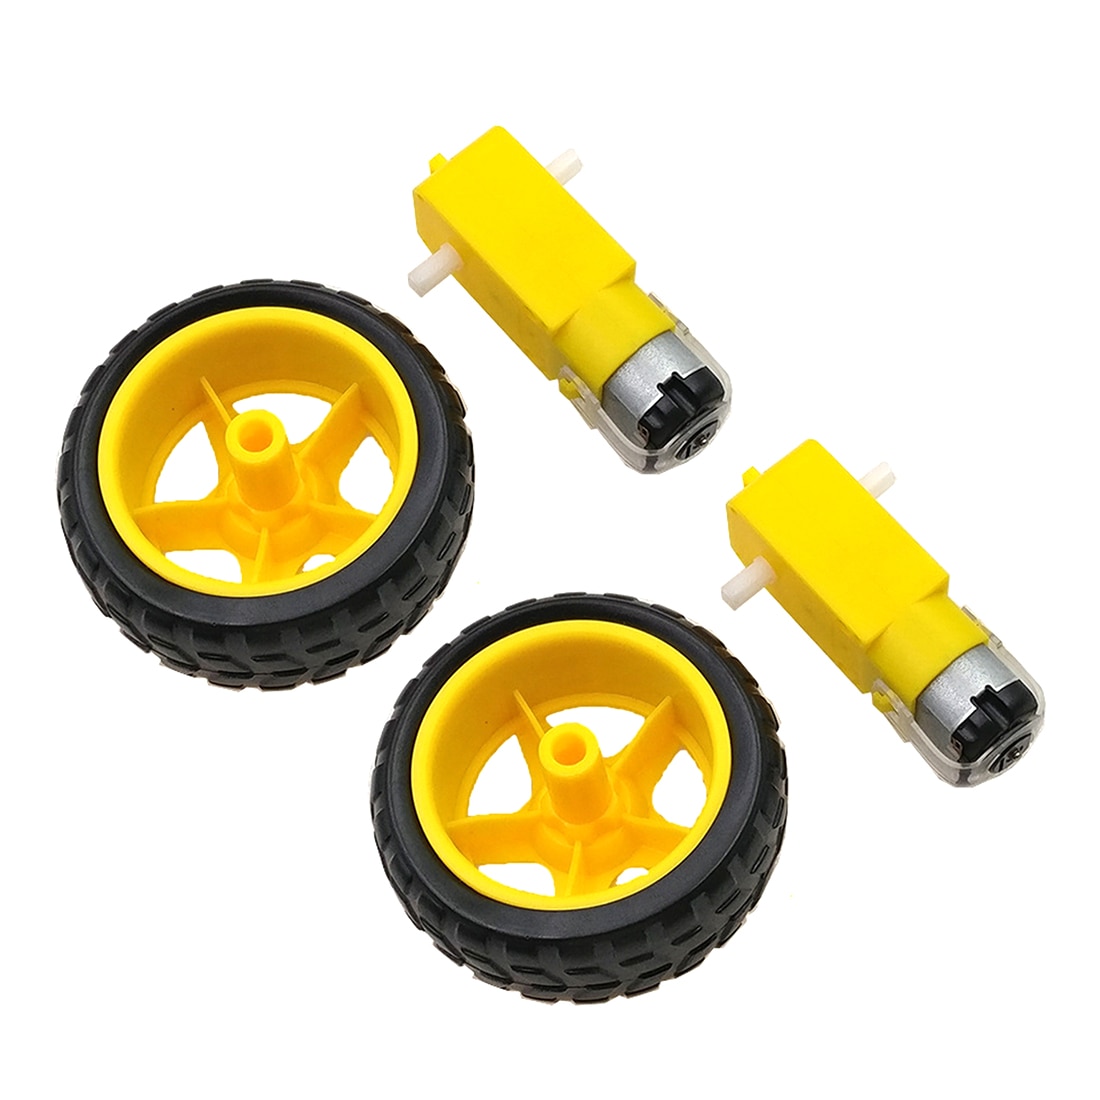 2 Stuks Kleine Smart Autobanden Wiel Robot Chassis Kit Met Dc Snelheidsreductie Motor Voor Kinderen Kids Onderwijs Speelgoed